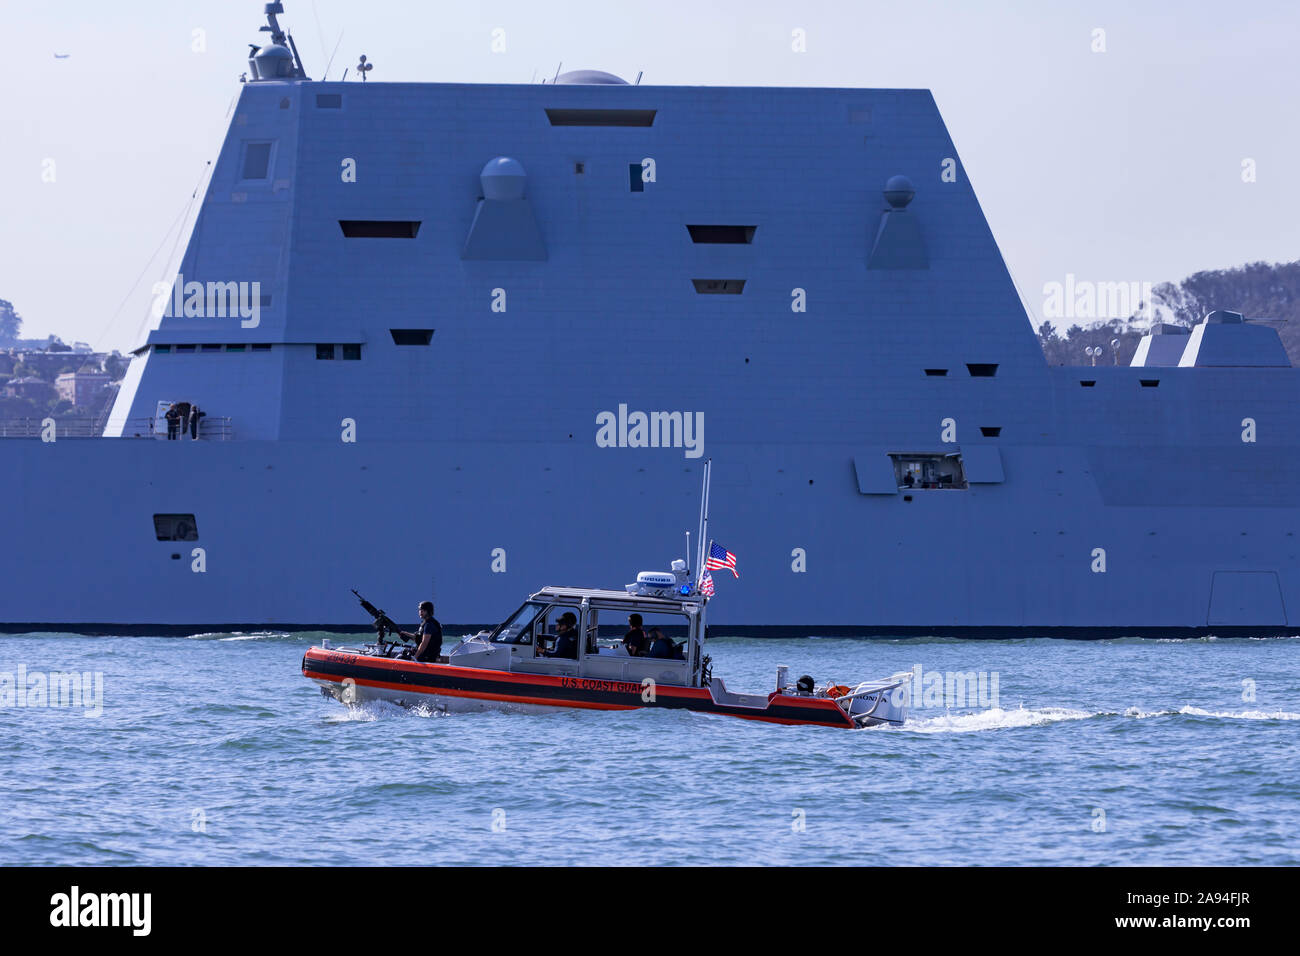 L'United States Navy destroyer lance-missiles USS Zumwalt (DDG-1000) est escorté par une Garde côtière TDDSM alors qu'il entre dans la baie de San Francisco au cours de la 201 Banque D'Images